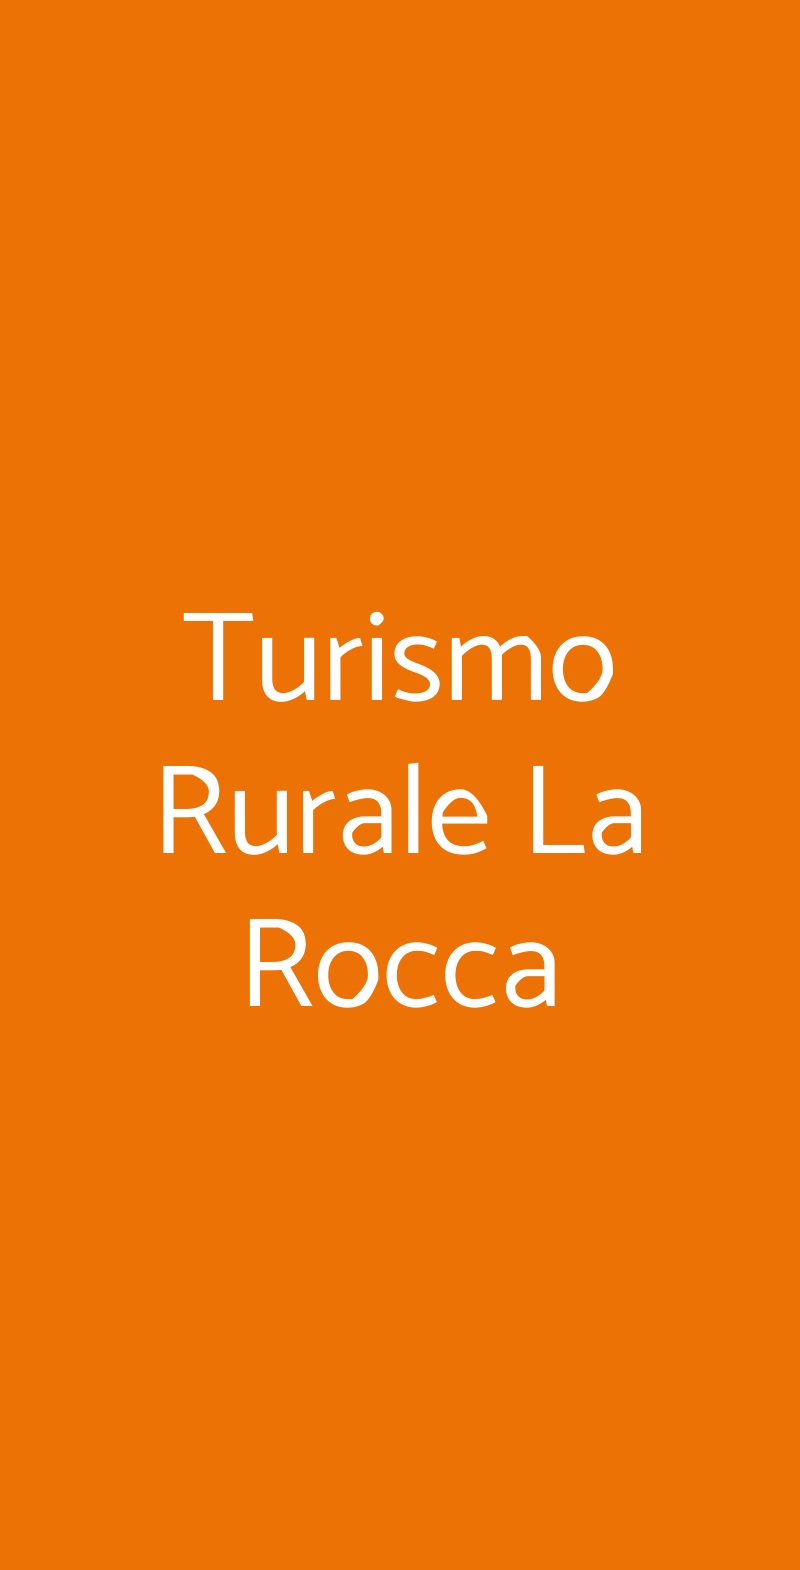 Turismo Rurale La Rocca Olbia menù 1 pagina